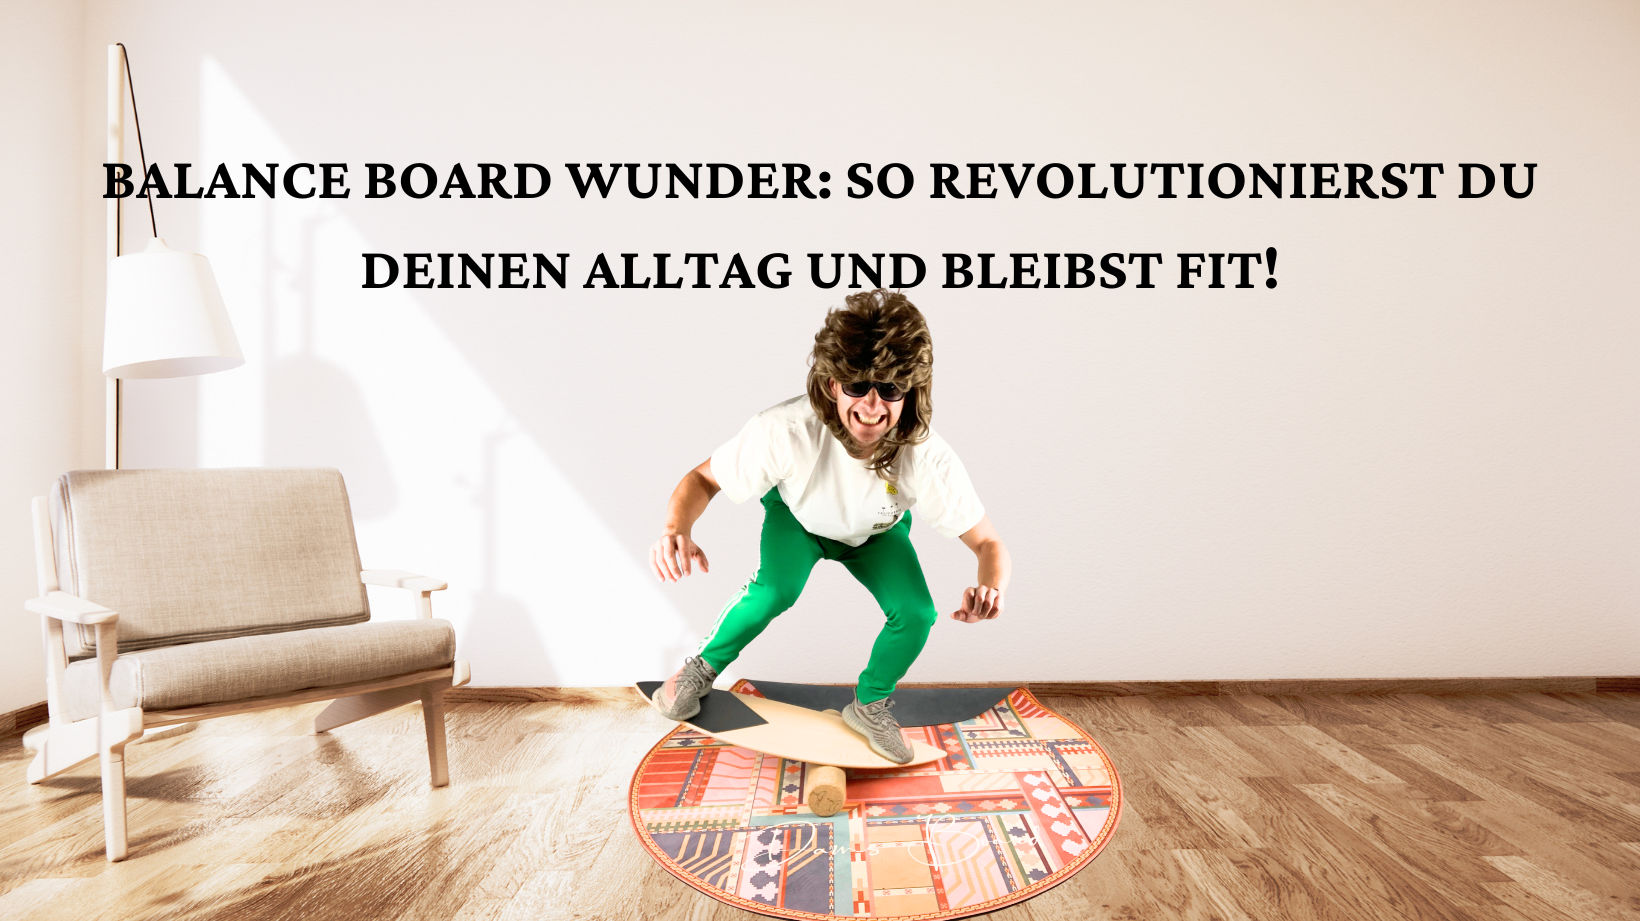 Balance Board Wunder: So revolutionierst du deinen Alltag und bleibst fit!